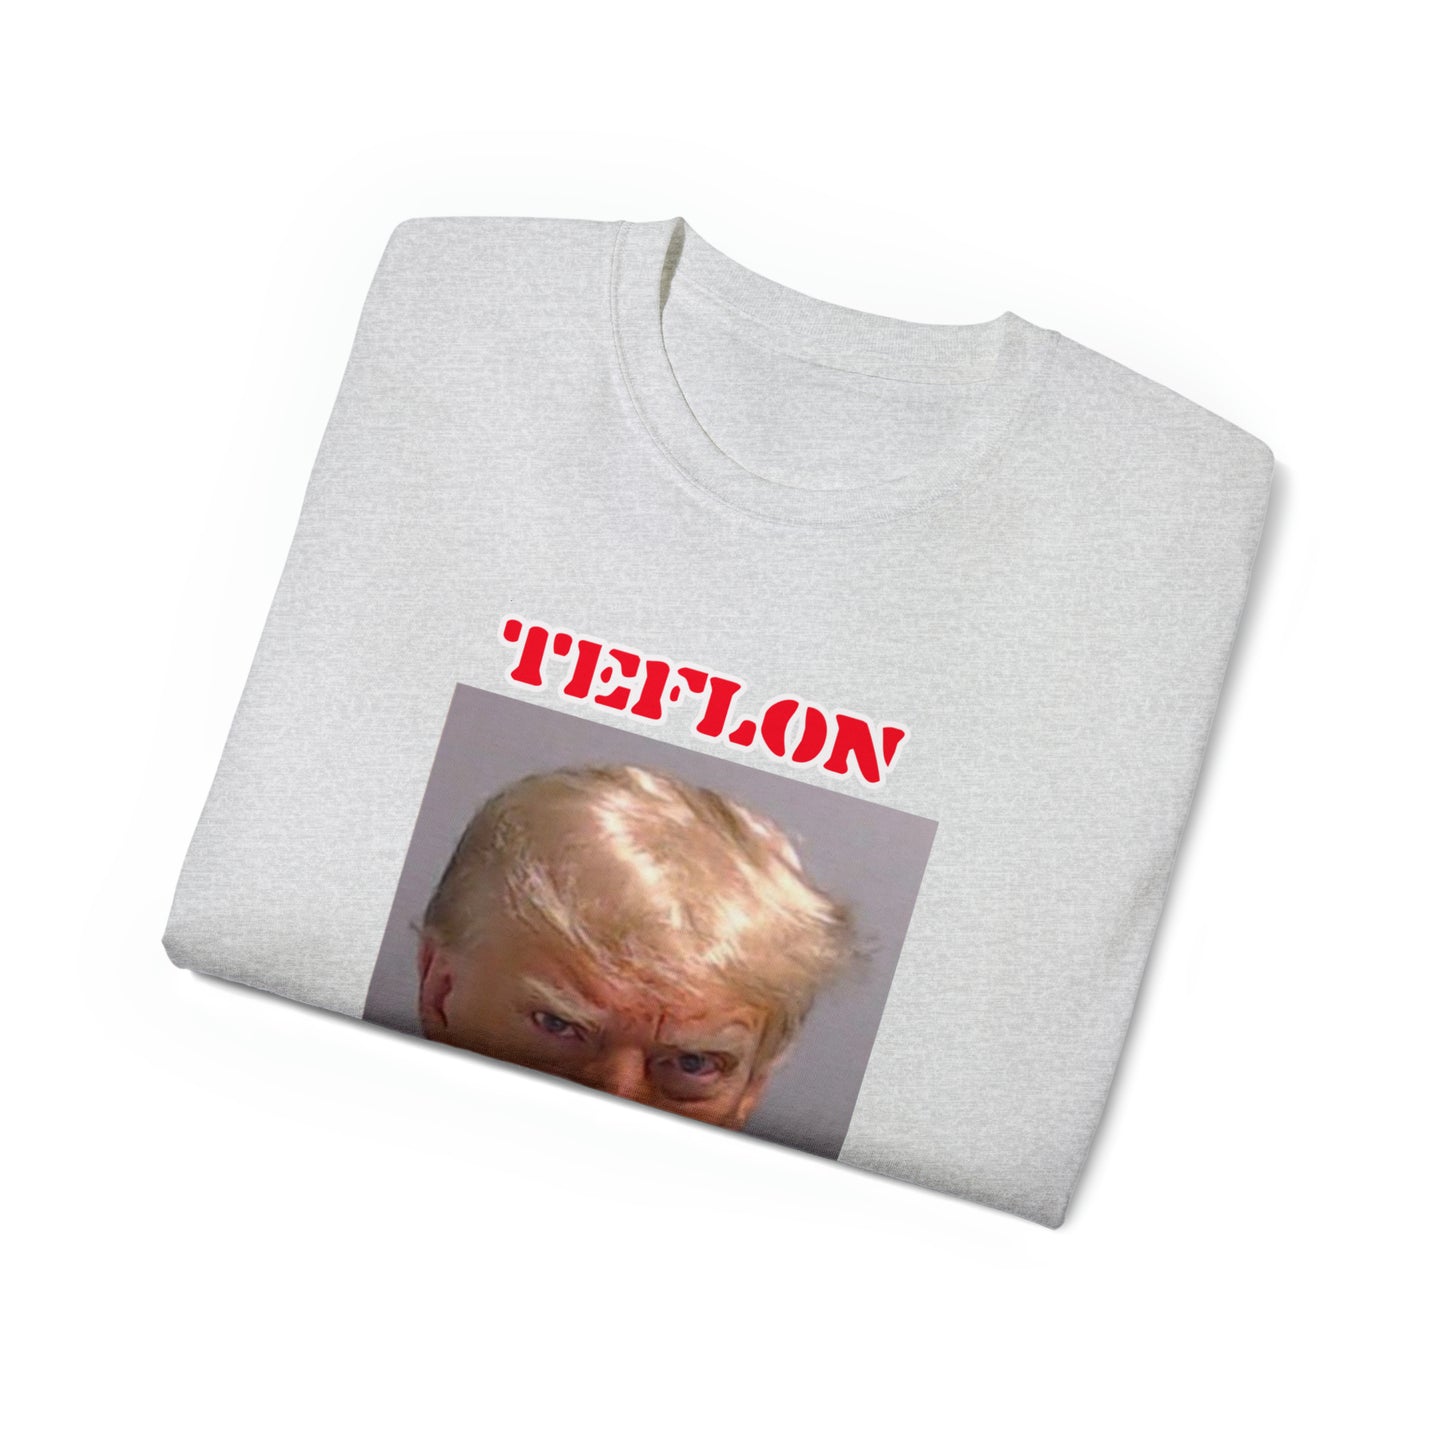 Teflon Don Trump Maga Tee #Maga #TeflonDon #Trump #Maga2024